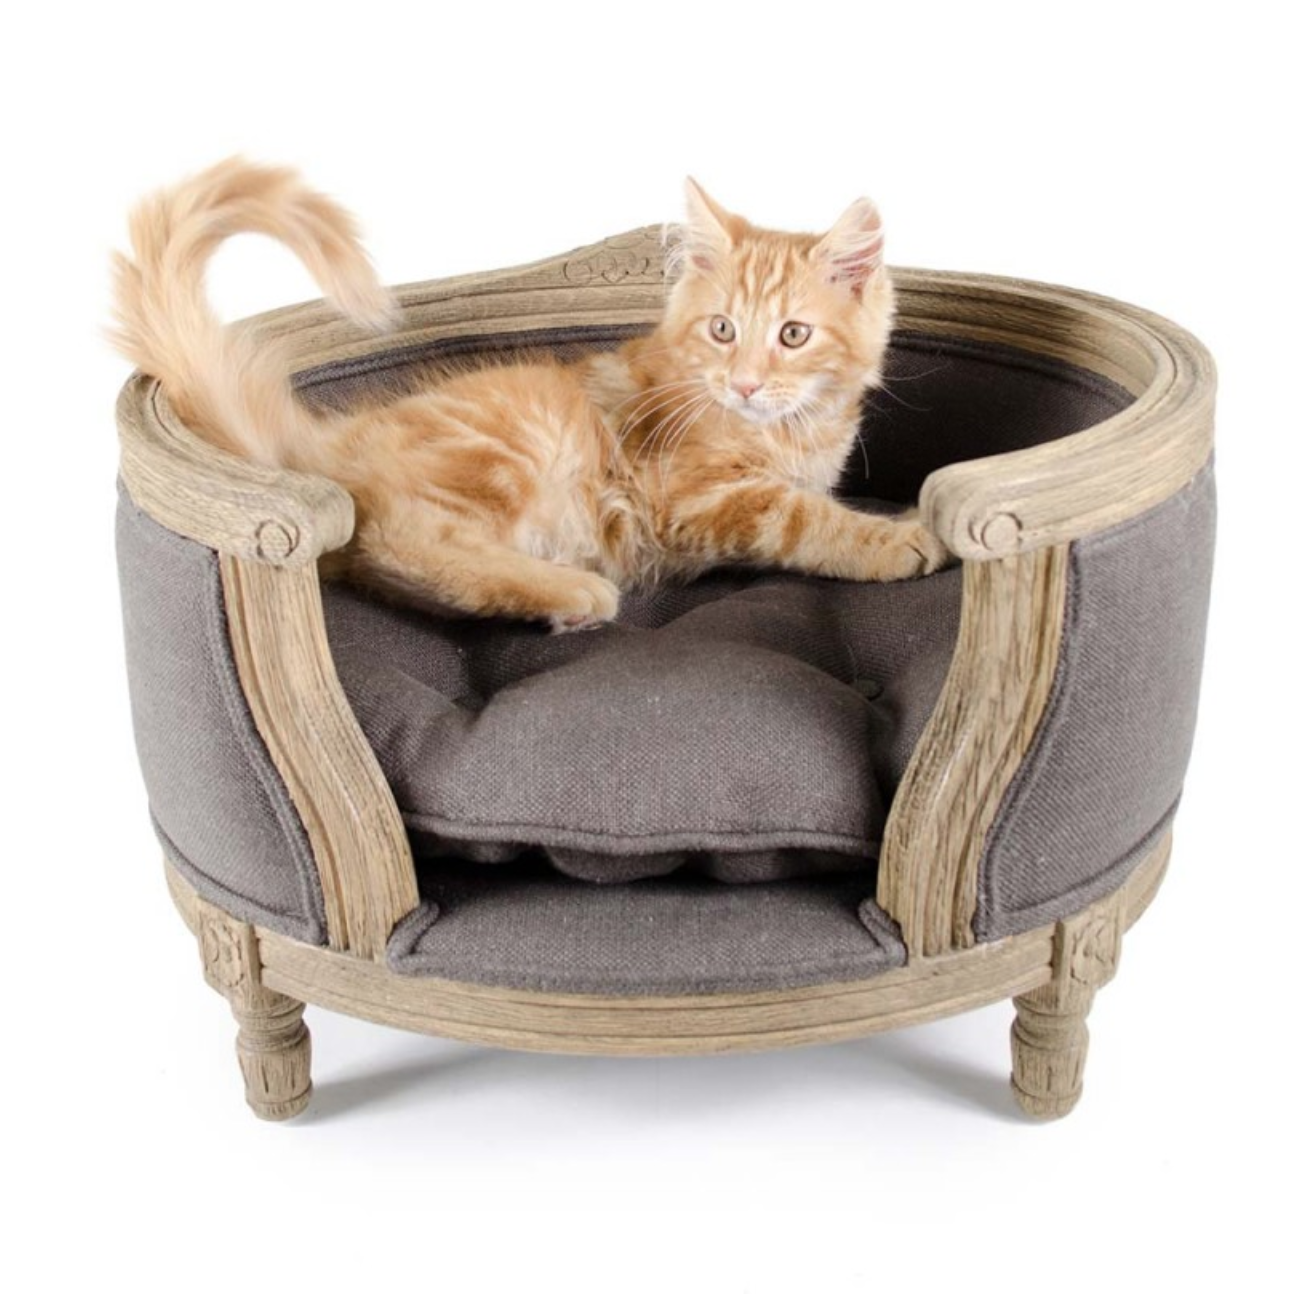 Digitaal Doorlaatbaarheid Recyclen Een zeer stijlvolle en luxe katten sofa in Louis XVI stijl om heerlijk op  te relaxen. - Nieuws - Wonen.nl